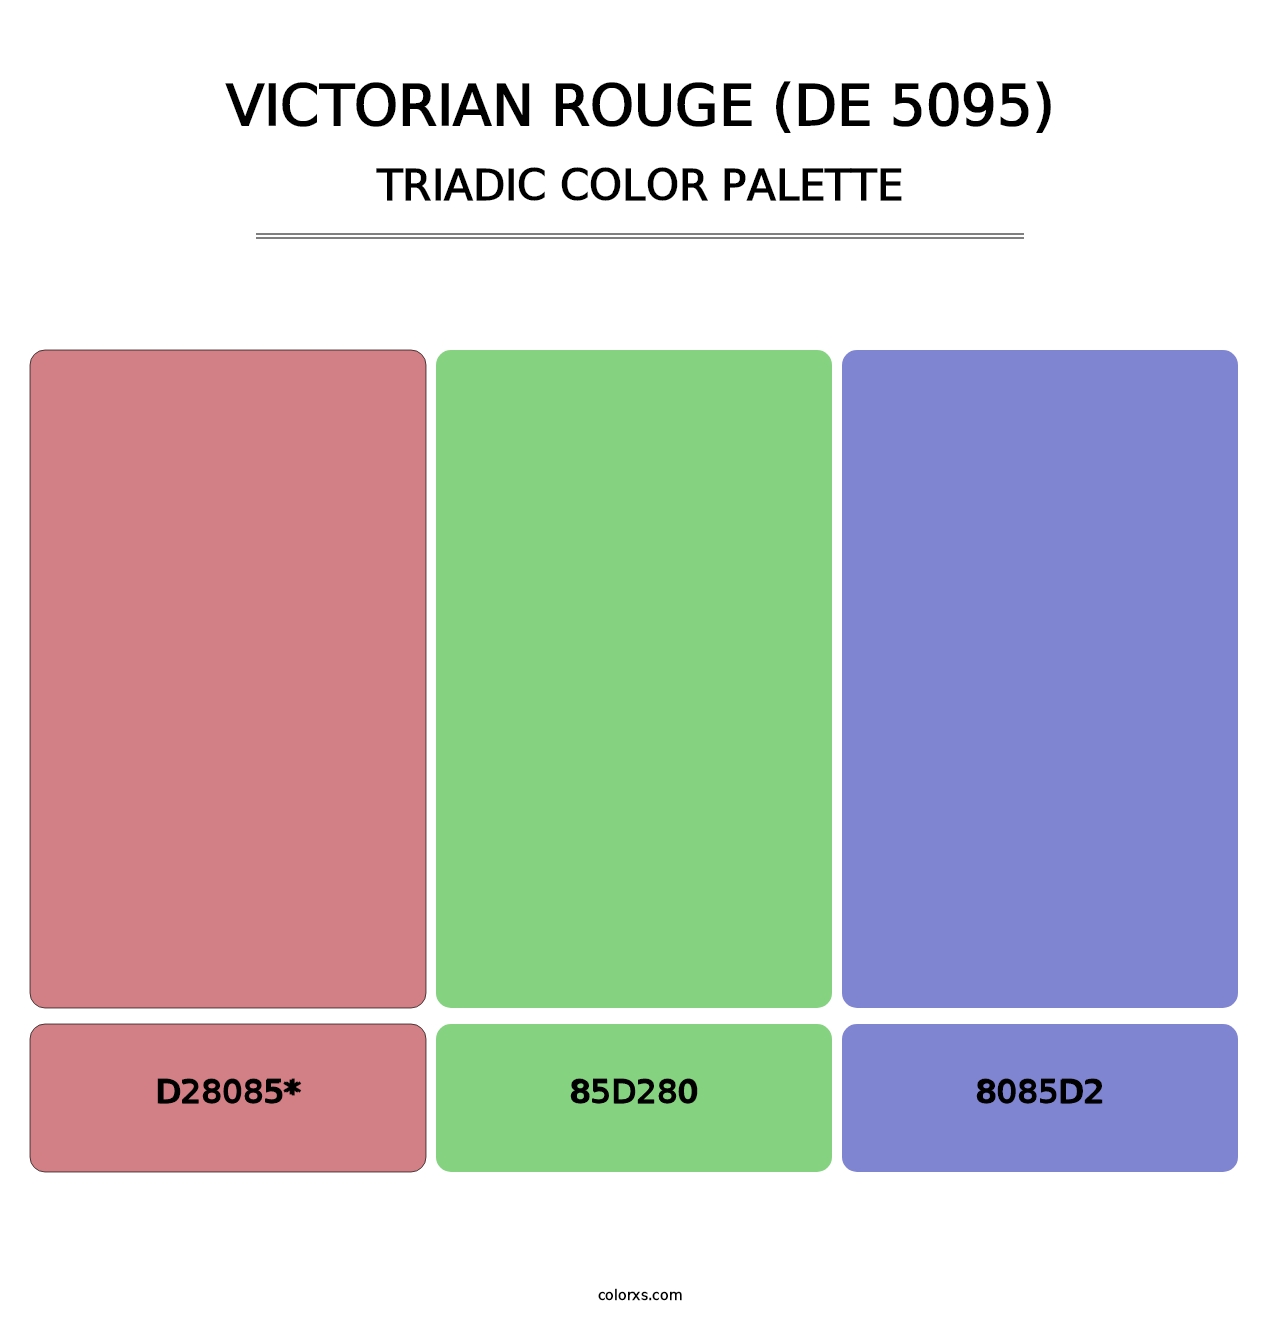 Victorian Rouge (DE 5095) - Triadic Color Palette